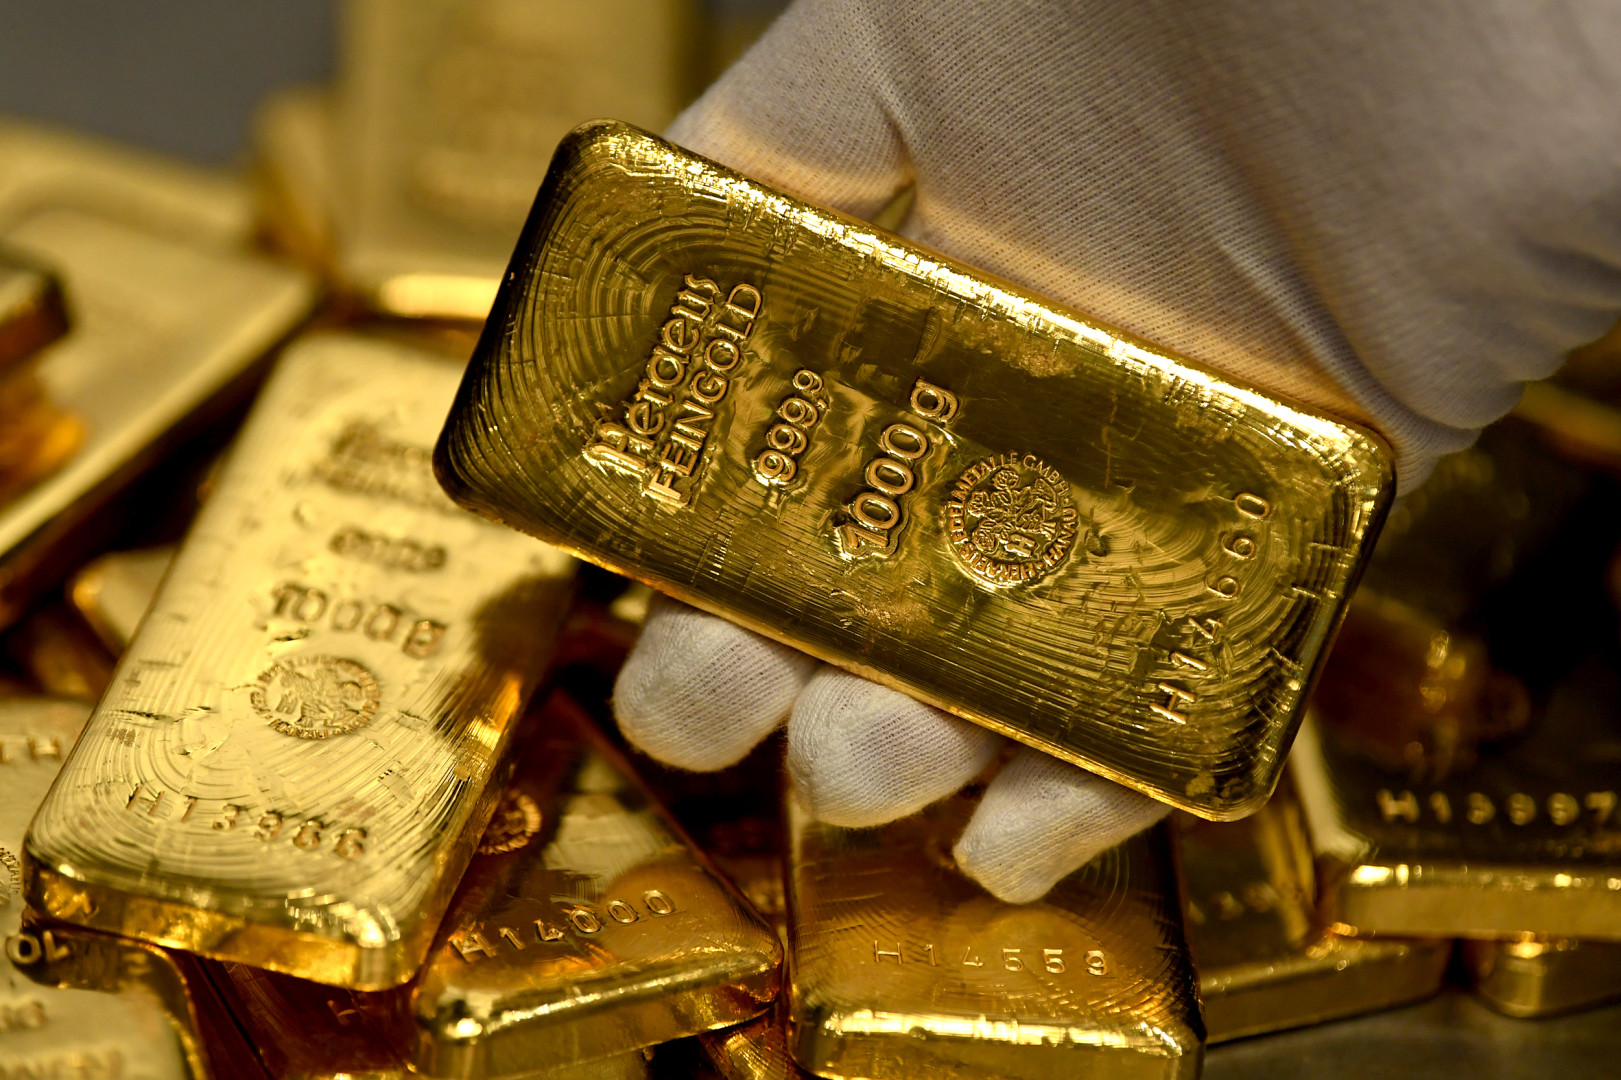 العراق يرفع حيازته من الذهب بشراء أكثر من طنين من المعدن الأصفر